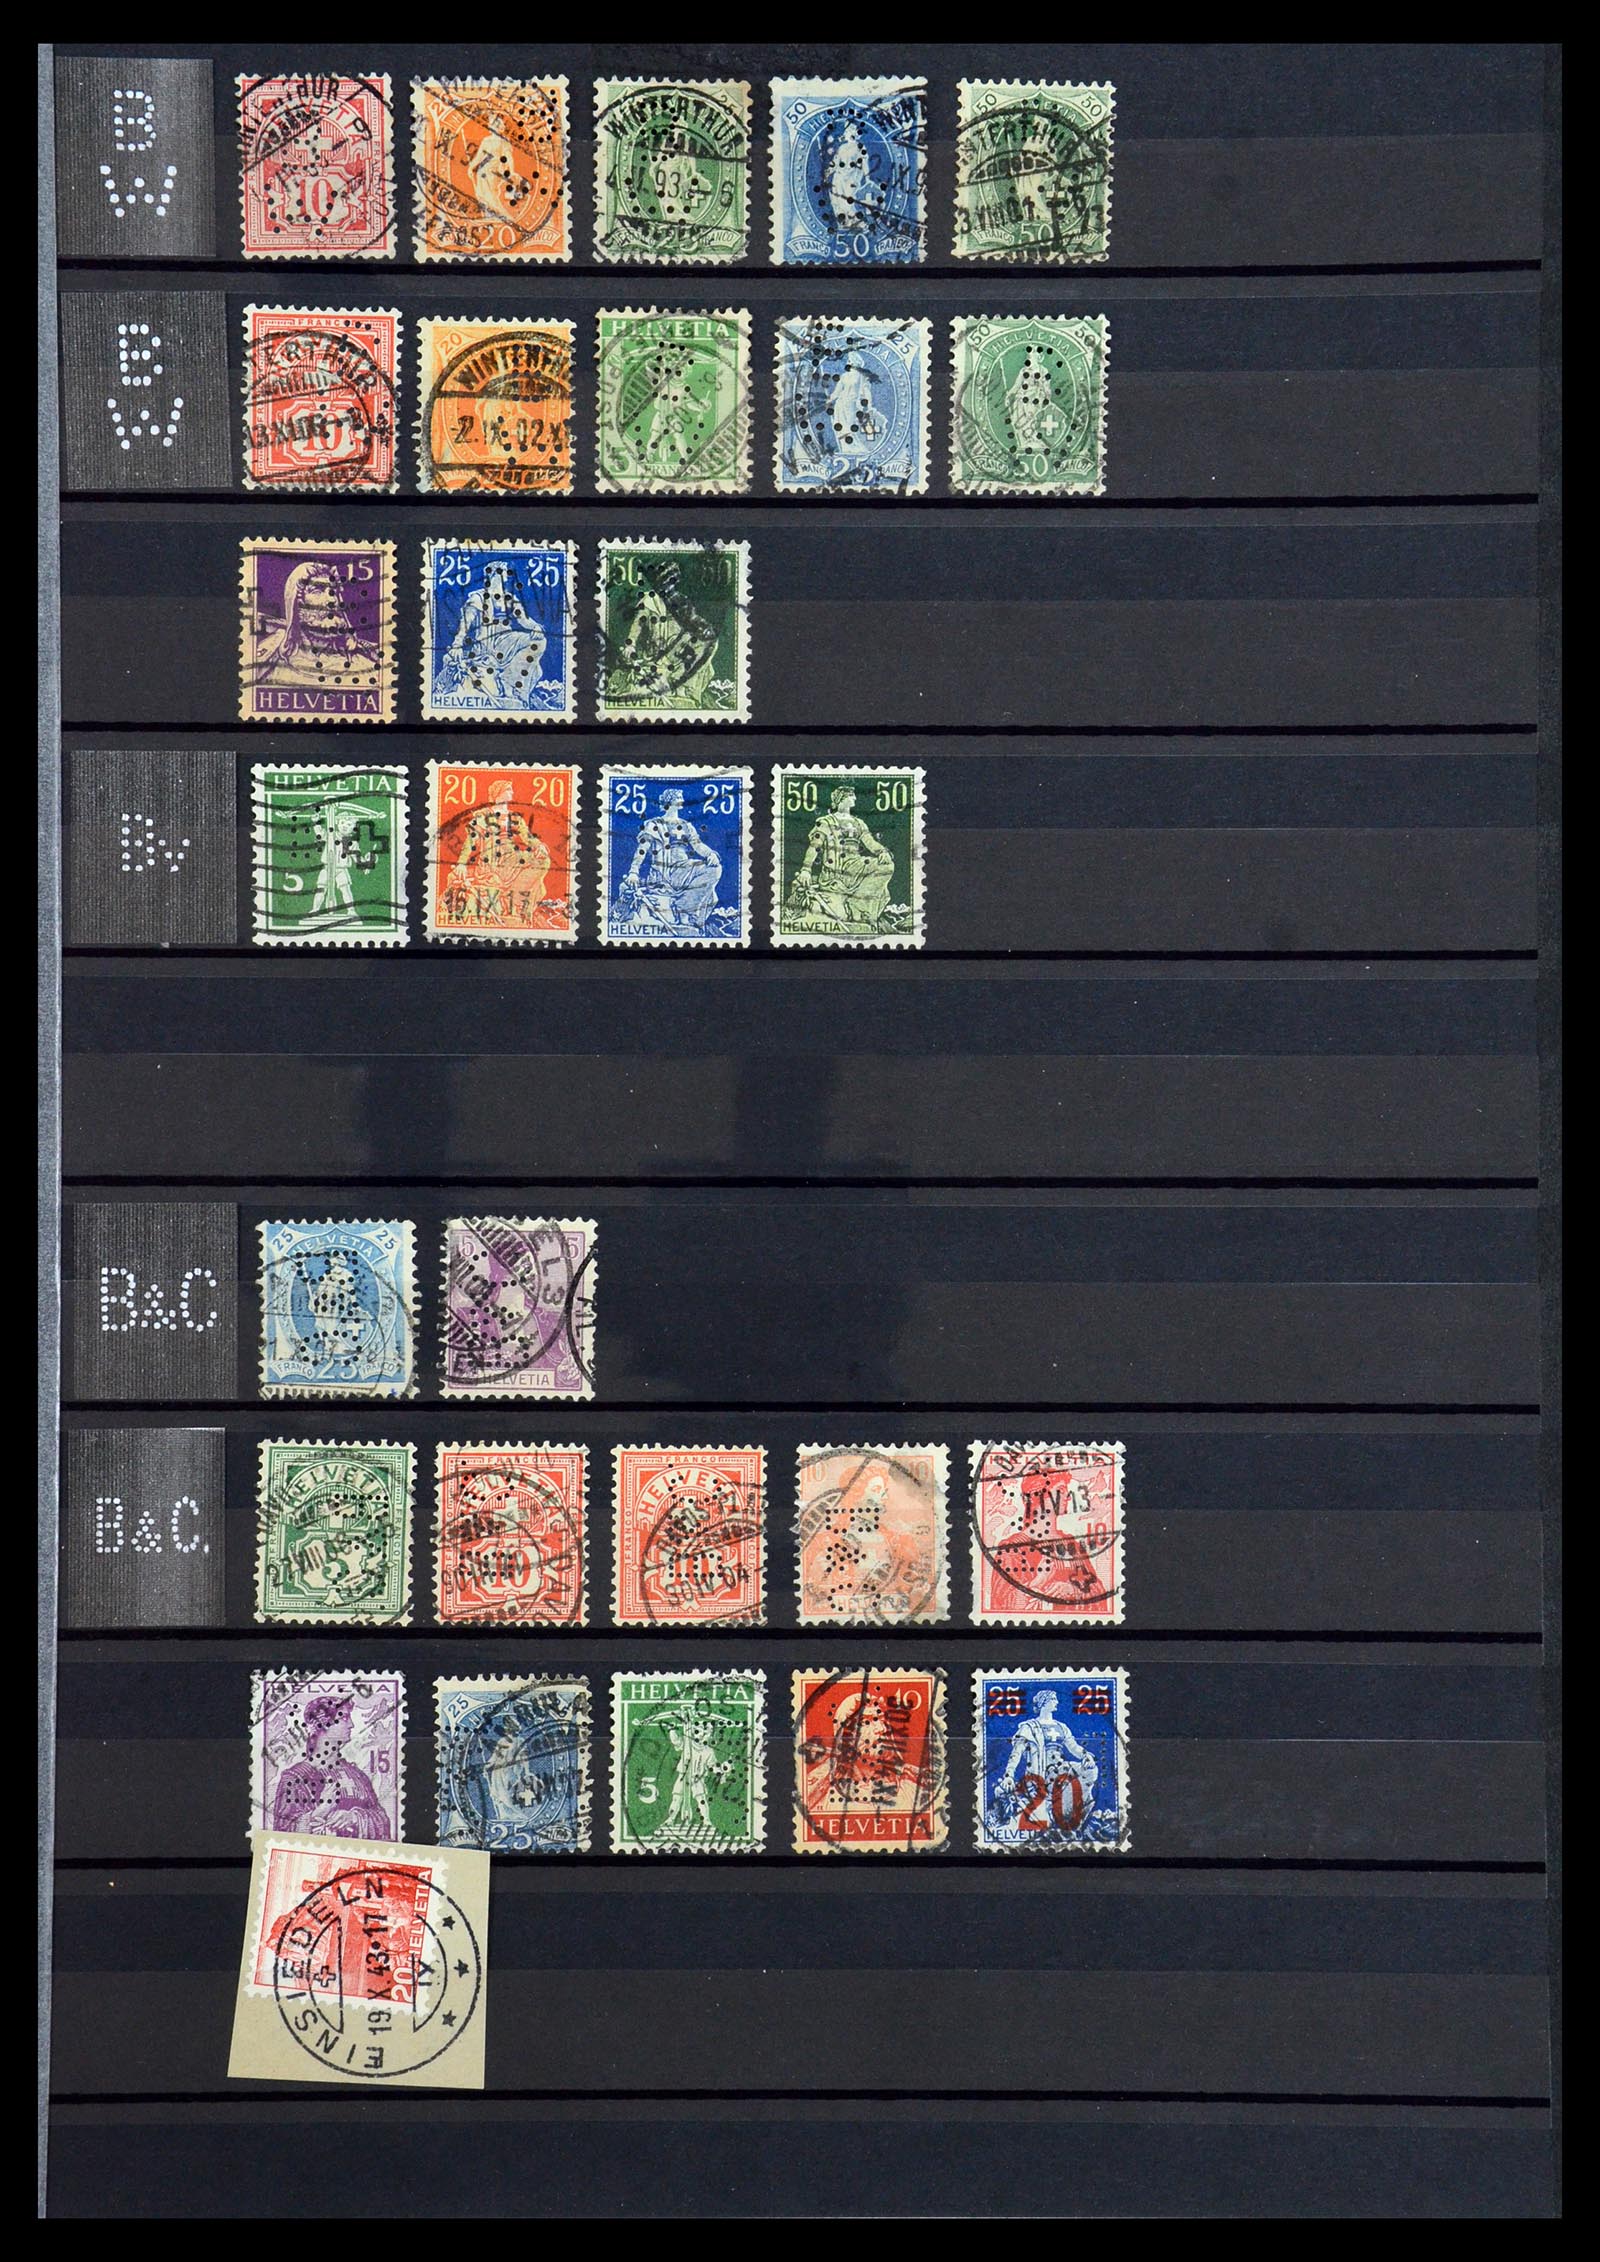 36372 007 - Stamp collection 36372 Switzerland perfins 1880-1960.